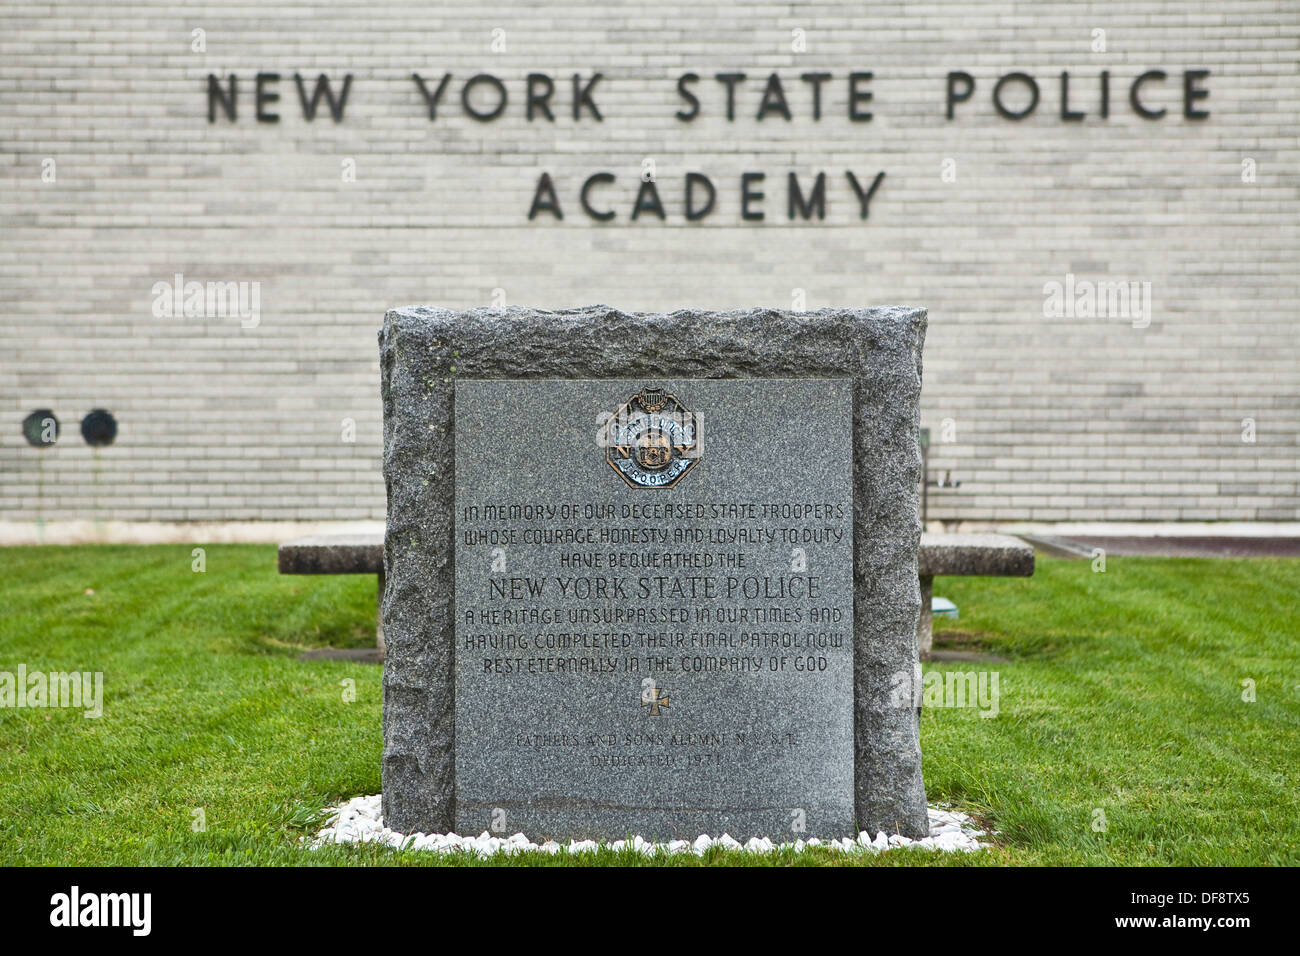 Academia de Policía del Estado de Nueva York está retratado en Albany Foto de stock